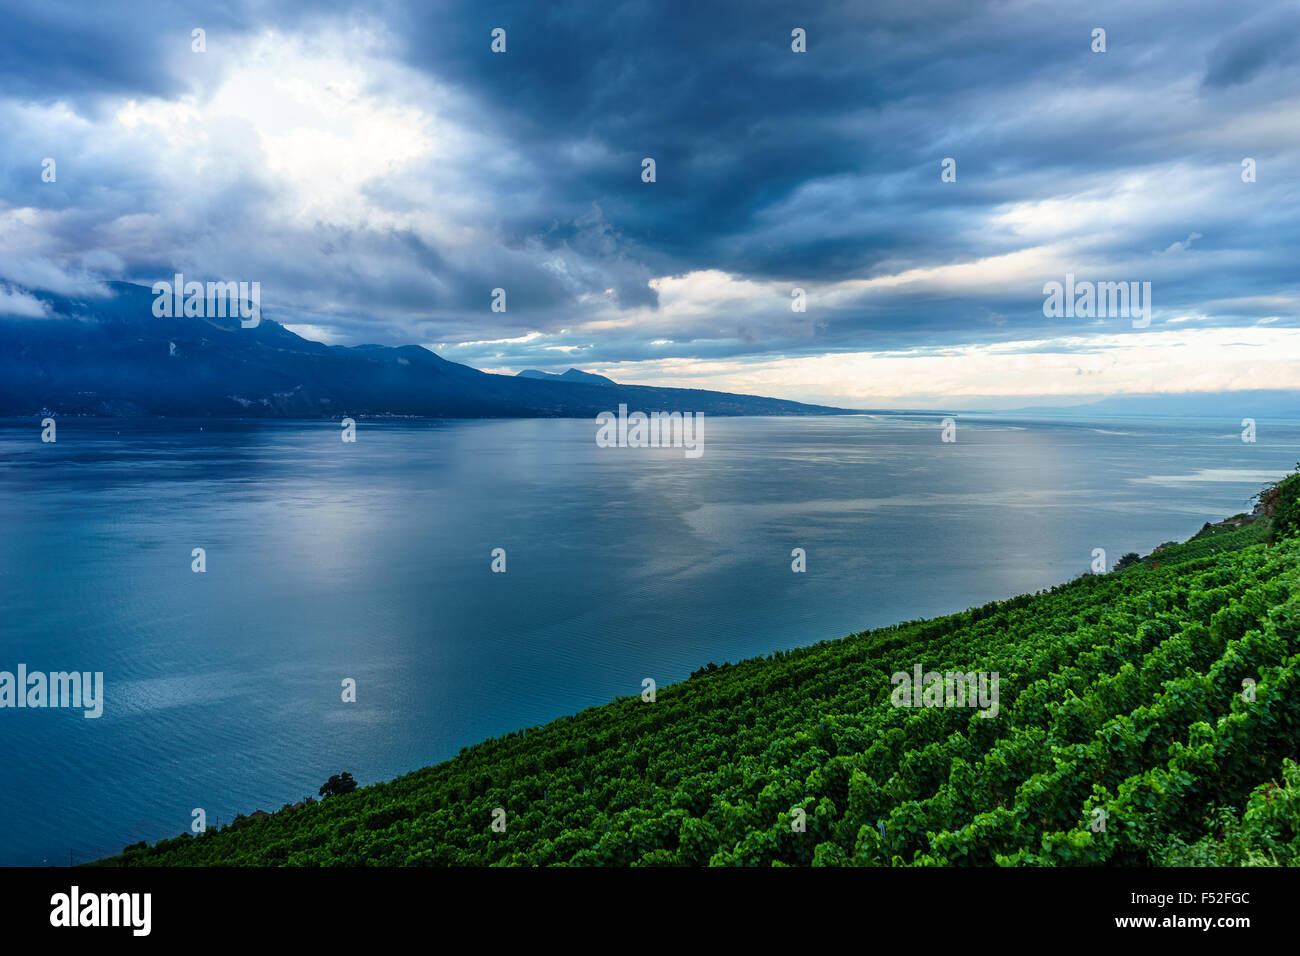 Die Weinberge im Lavaux, einem UNESCO-Weltkulturerbe. Genfer See, Schweiz. Stockfoto